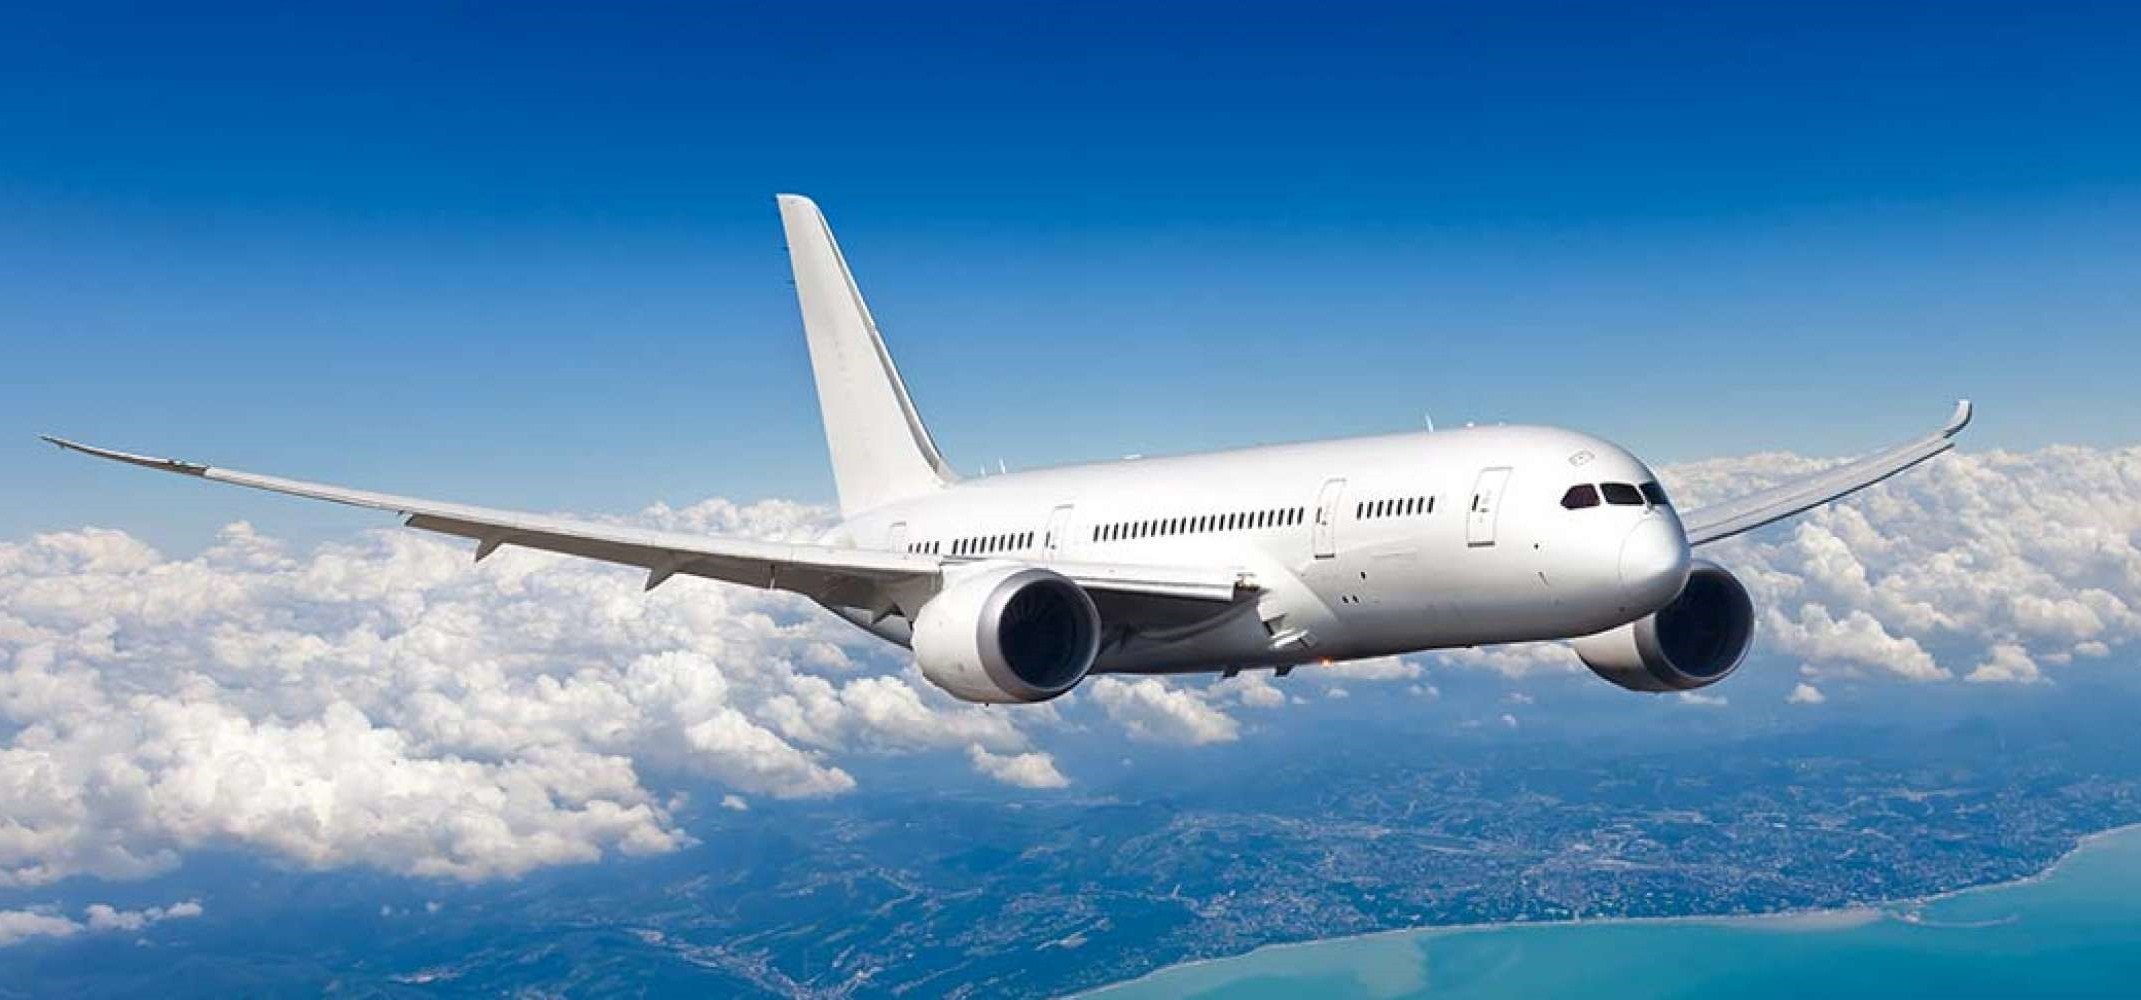 Ngành vận tải hàng không Việt Nam đang phục hồi và ngày càng phát triển